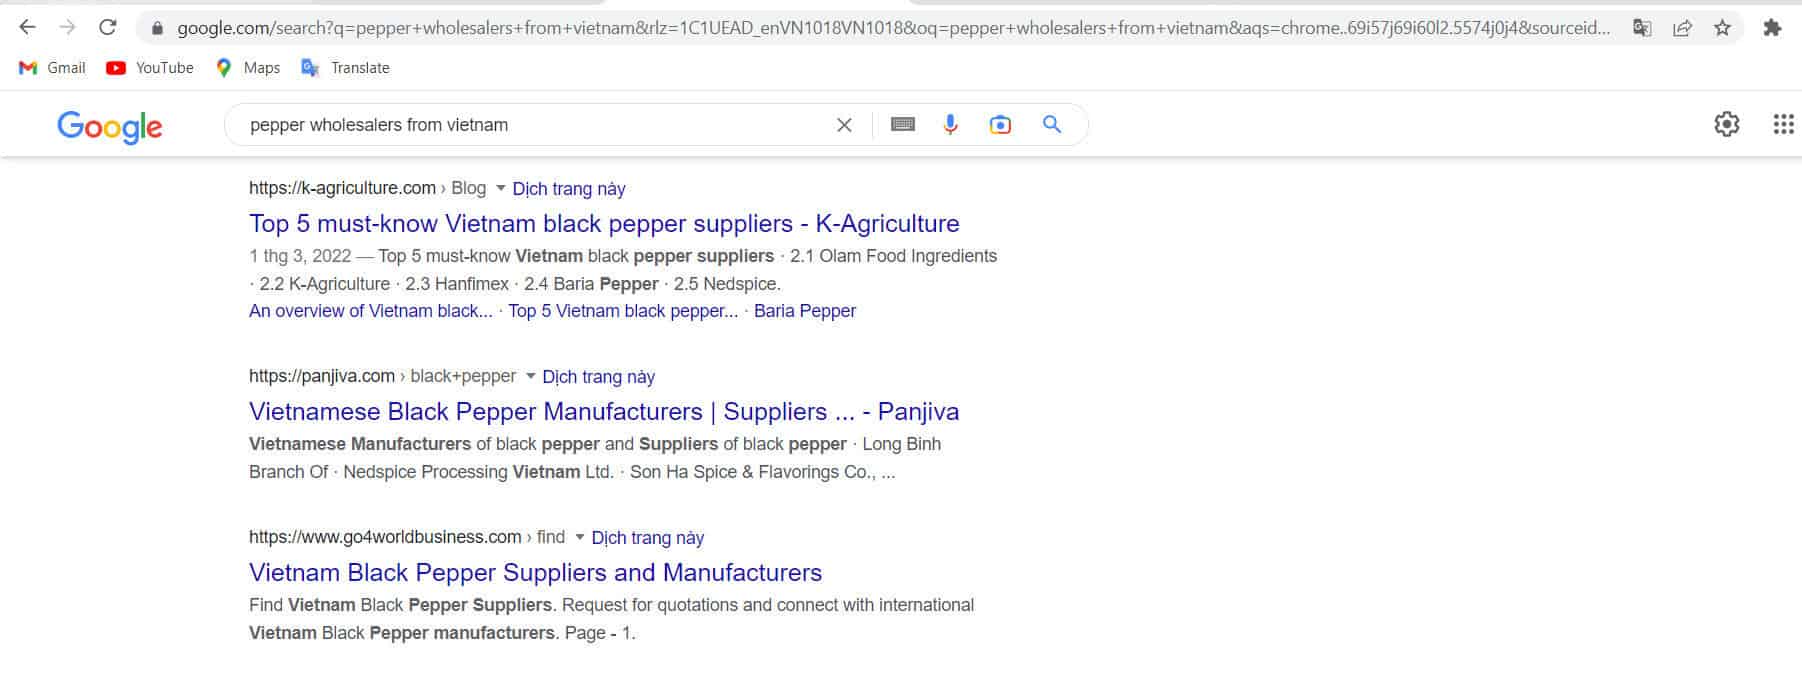 pepper-wholesalers-3.jpg